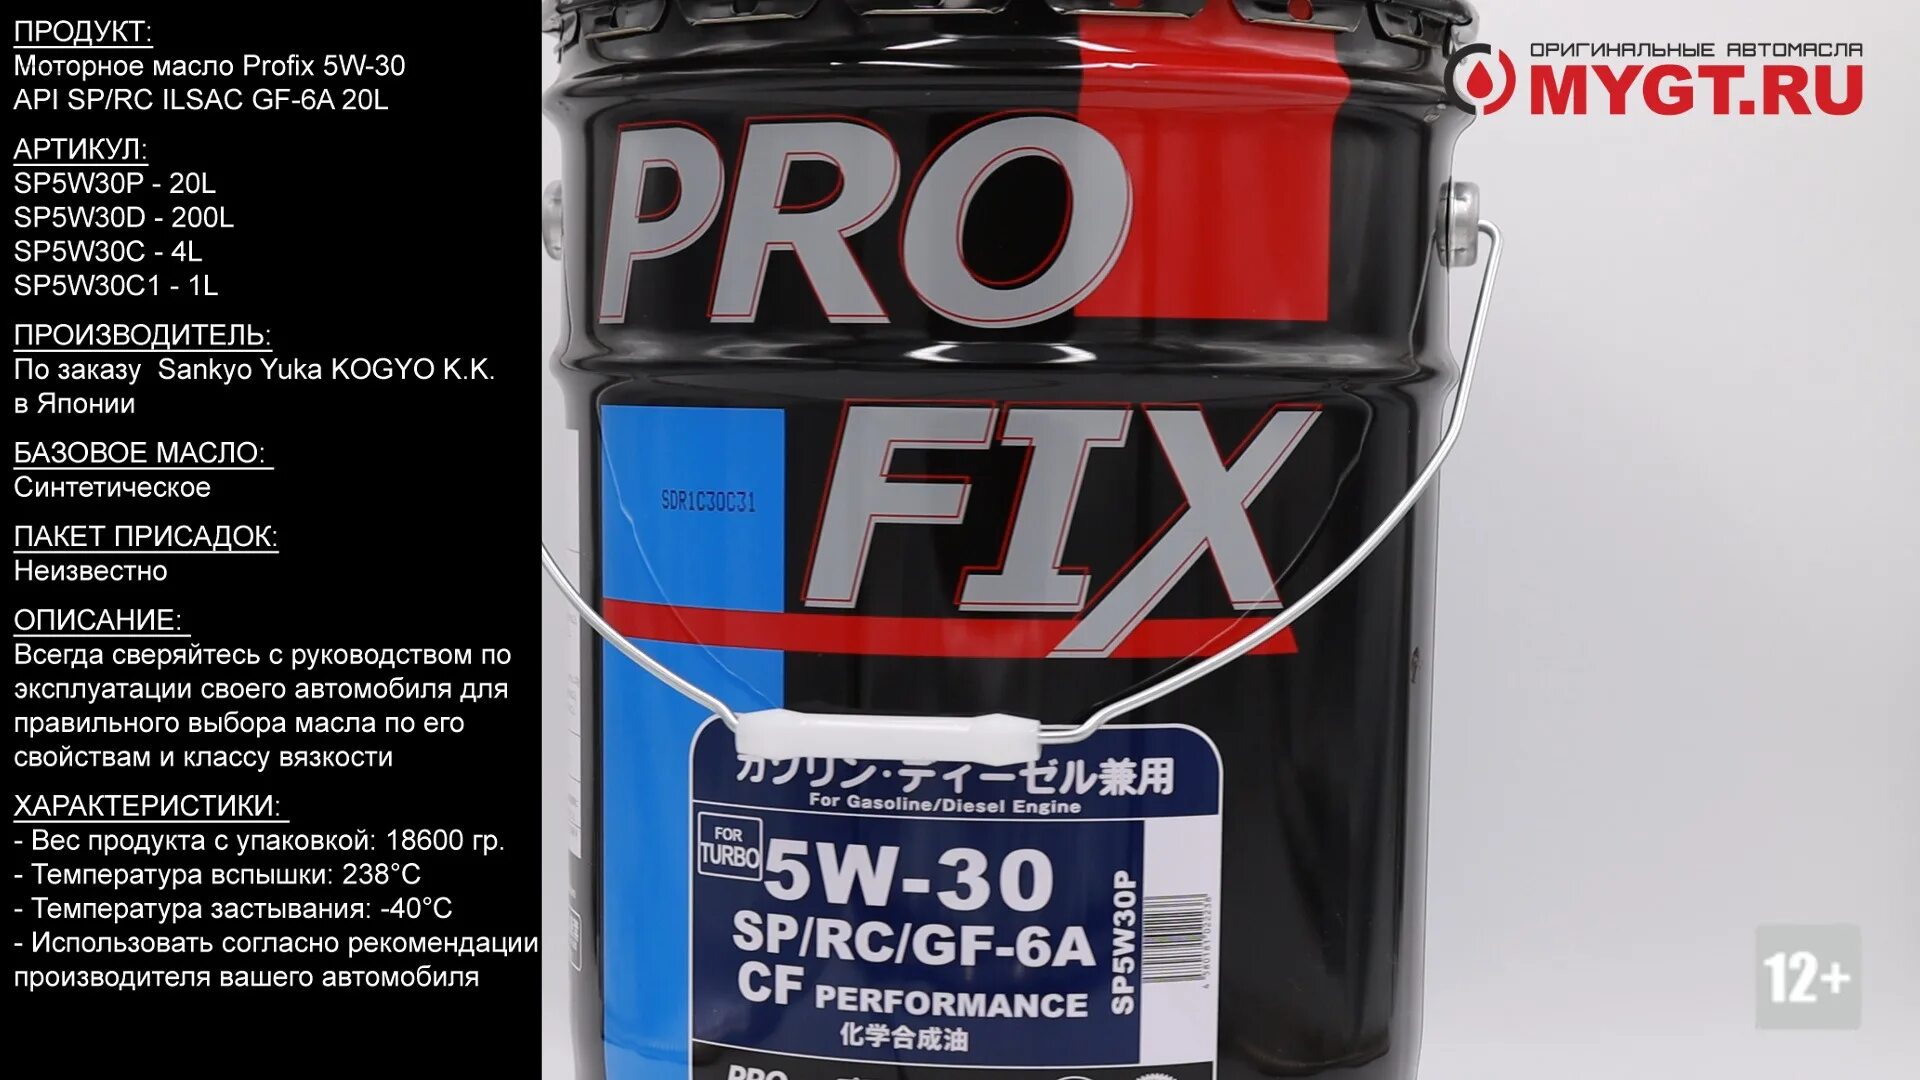 PROFIX SP/gf-6a 5w30. Sp5w30c1 PROFIX. PROFIX 5w30 gf-6a. PROFIX 5w30 SP.